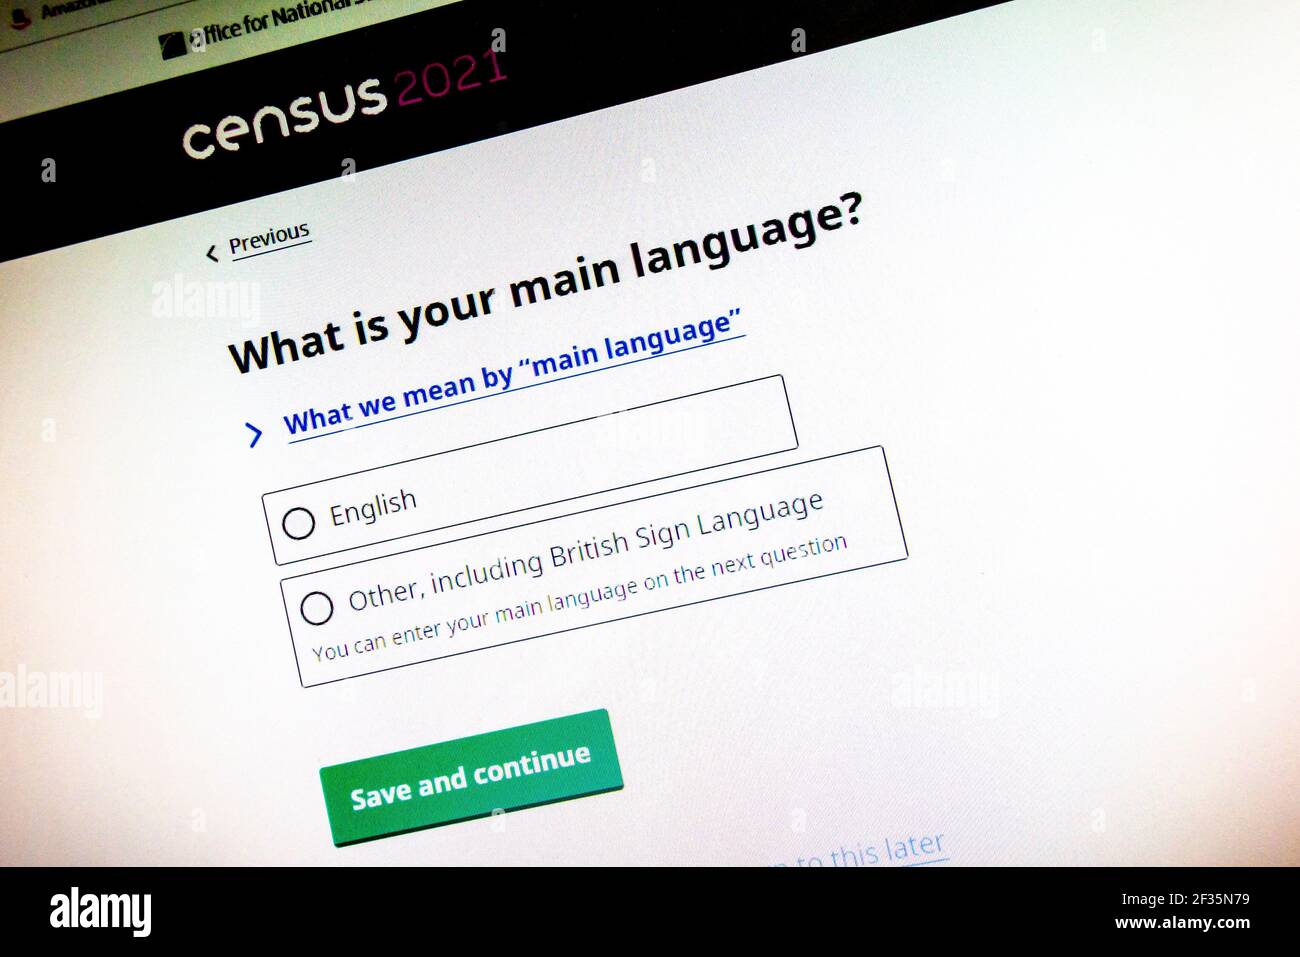 Schermo del computer che mostra le domande sulla lingua del censimento del Regno Unito 2021 organizzato dall'Ufficio per le statistiche nazionali. Foto Stock